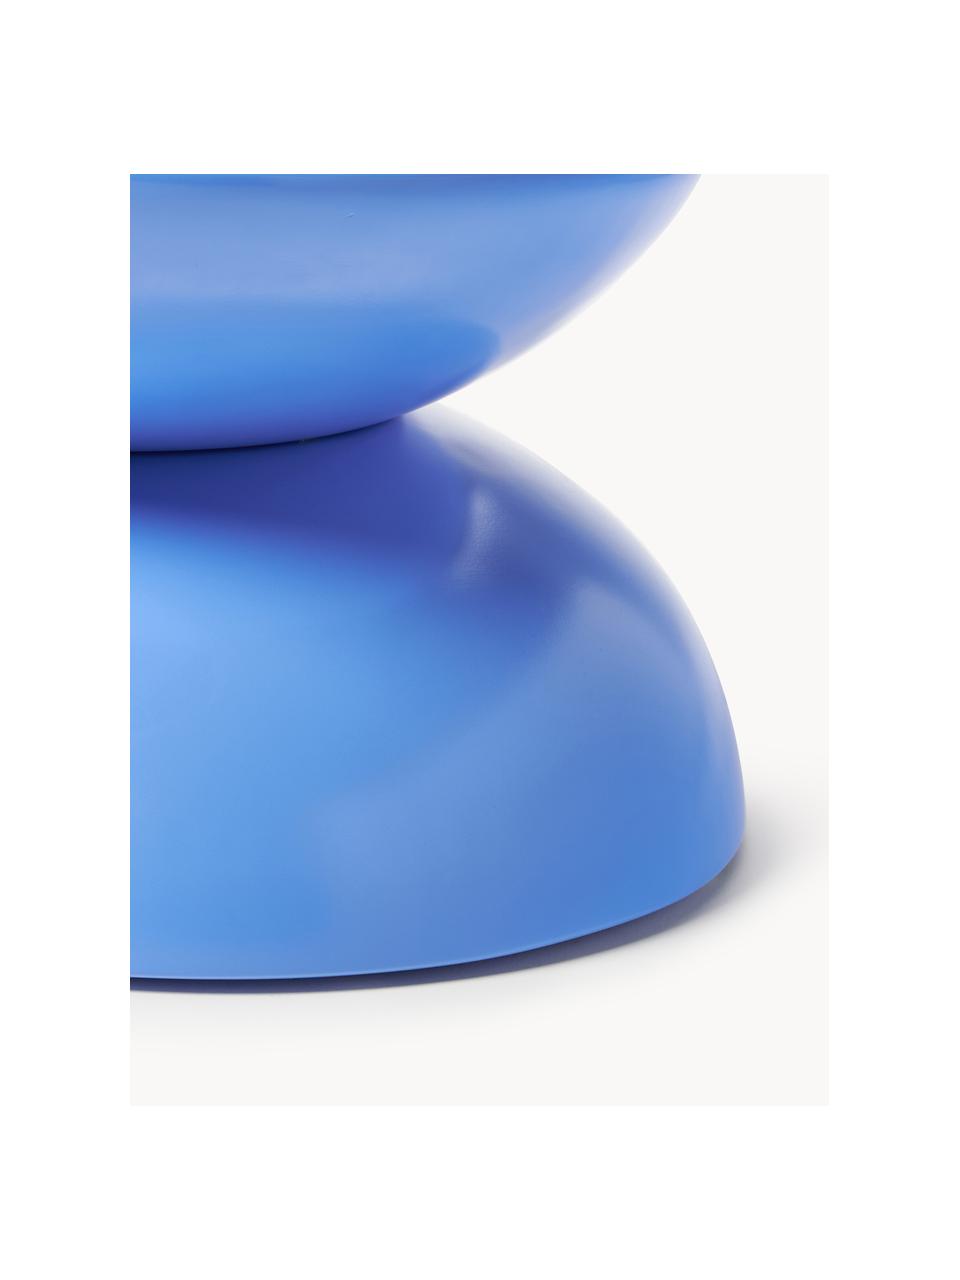 Wewnętrzny/zewnętrzny stolik pomocniczy Gigi, Tworzywo sztuczne, metal malowany proszkowo, Niebieski, S 65 x W 35 cm